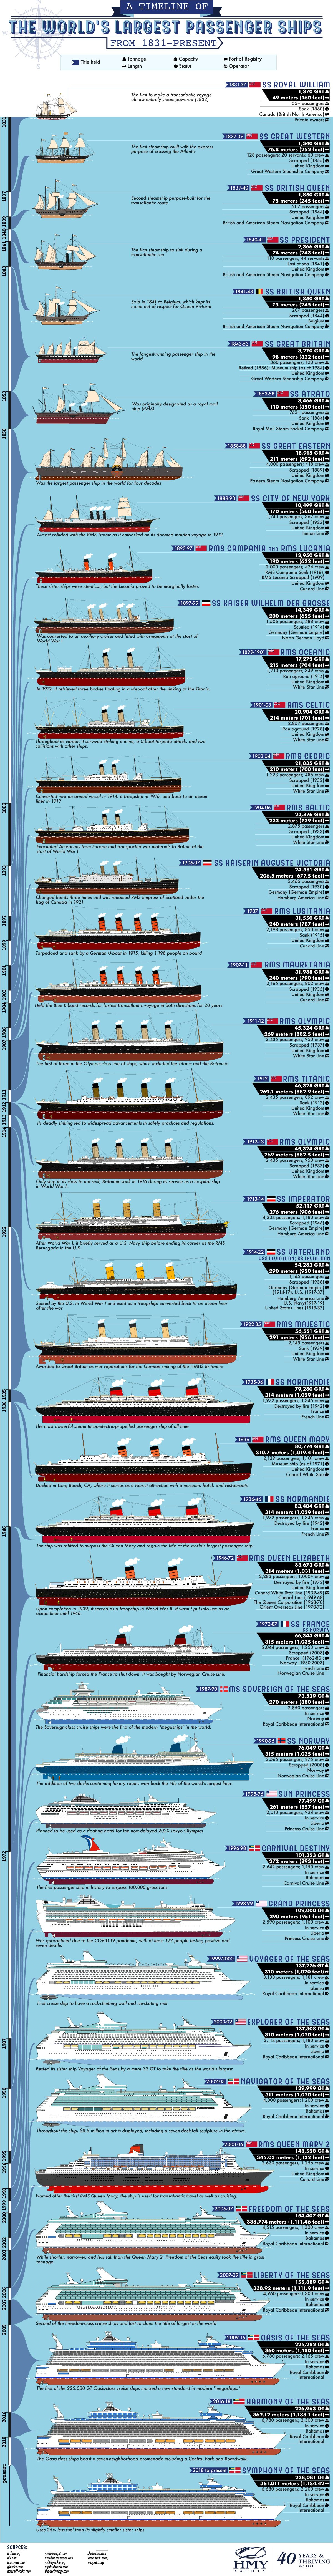 The World's Biggest Passenger Ships